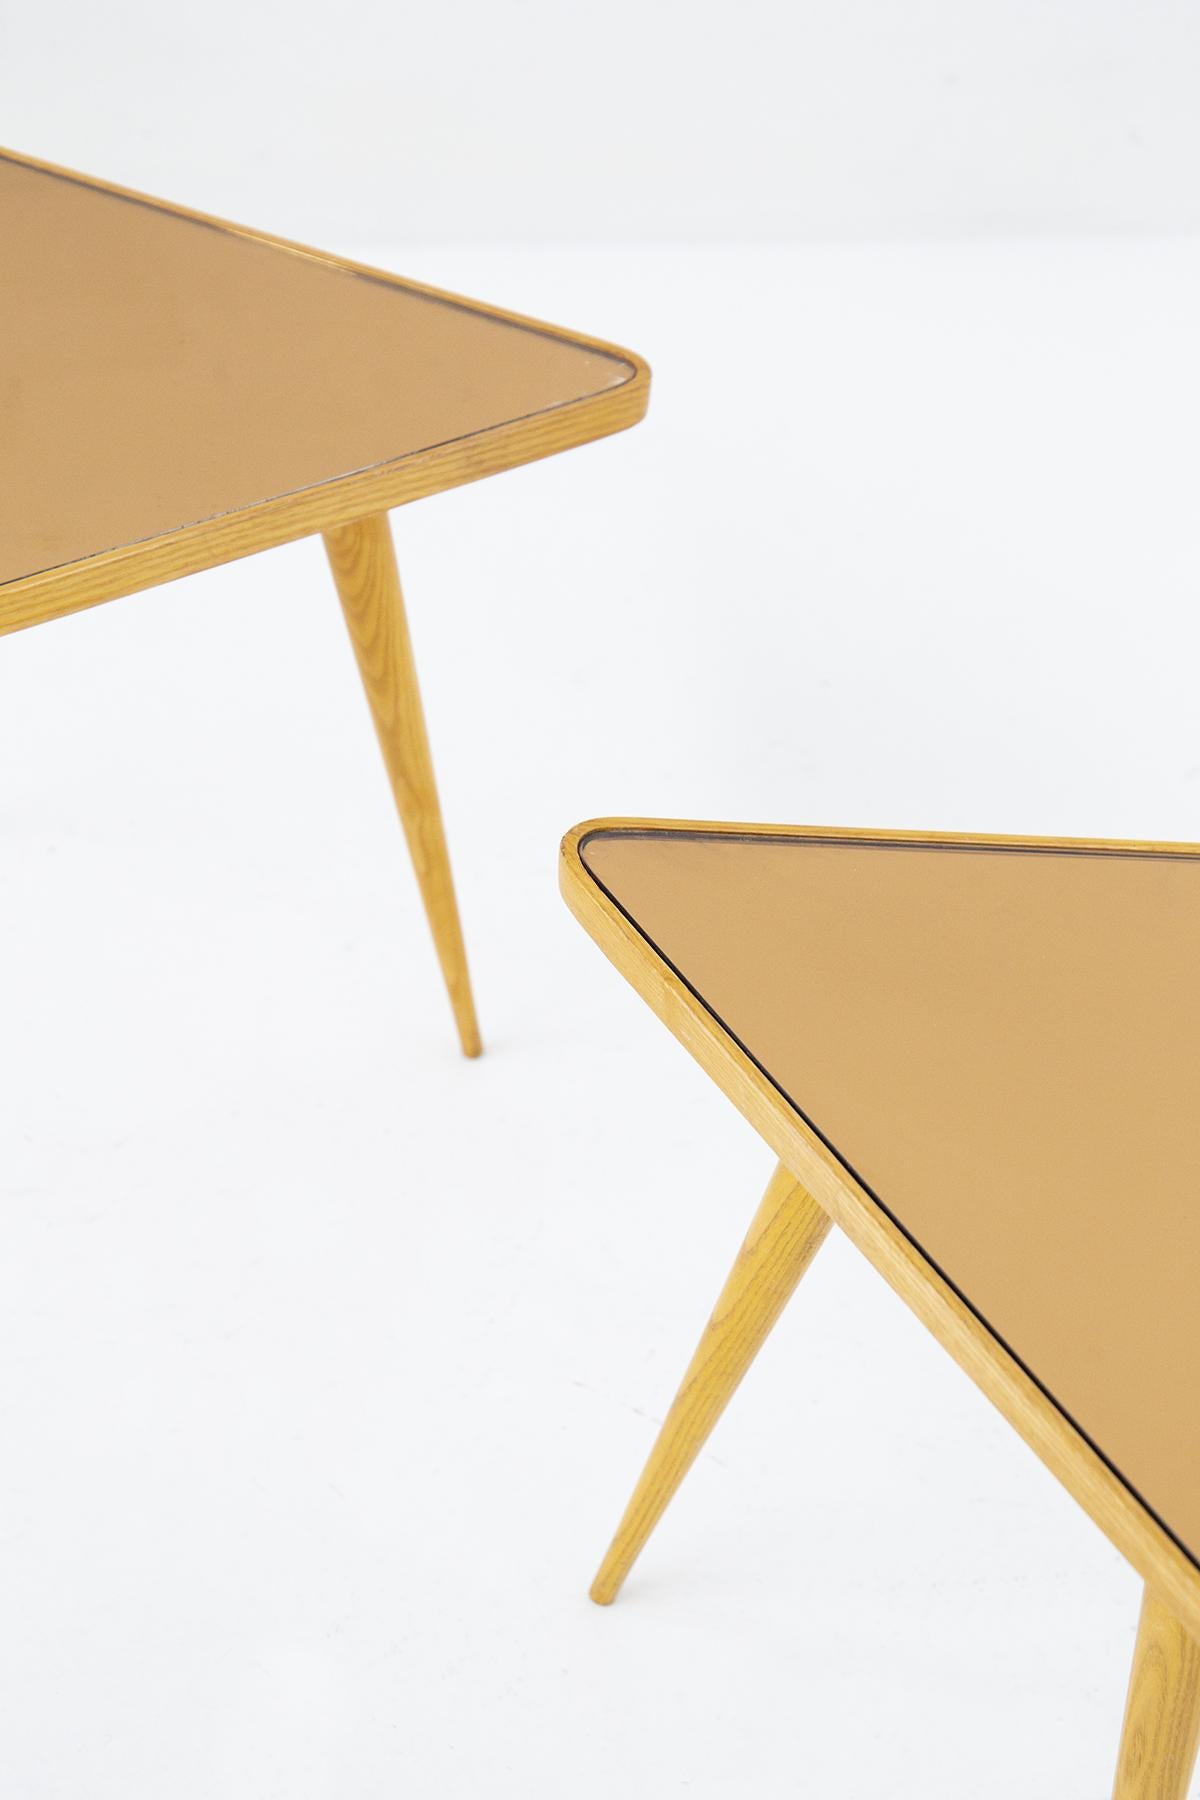 Très rare paire de tables basses triangulaires conçues par le grand Paolo Buffa pour la production de Serafino Arrighi, avec dessin relevé attestant de l'authenticité de la pièce. Les petites tables sont très belles et distinctives, entièrement